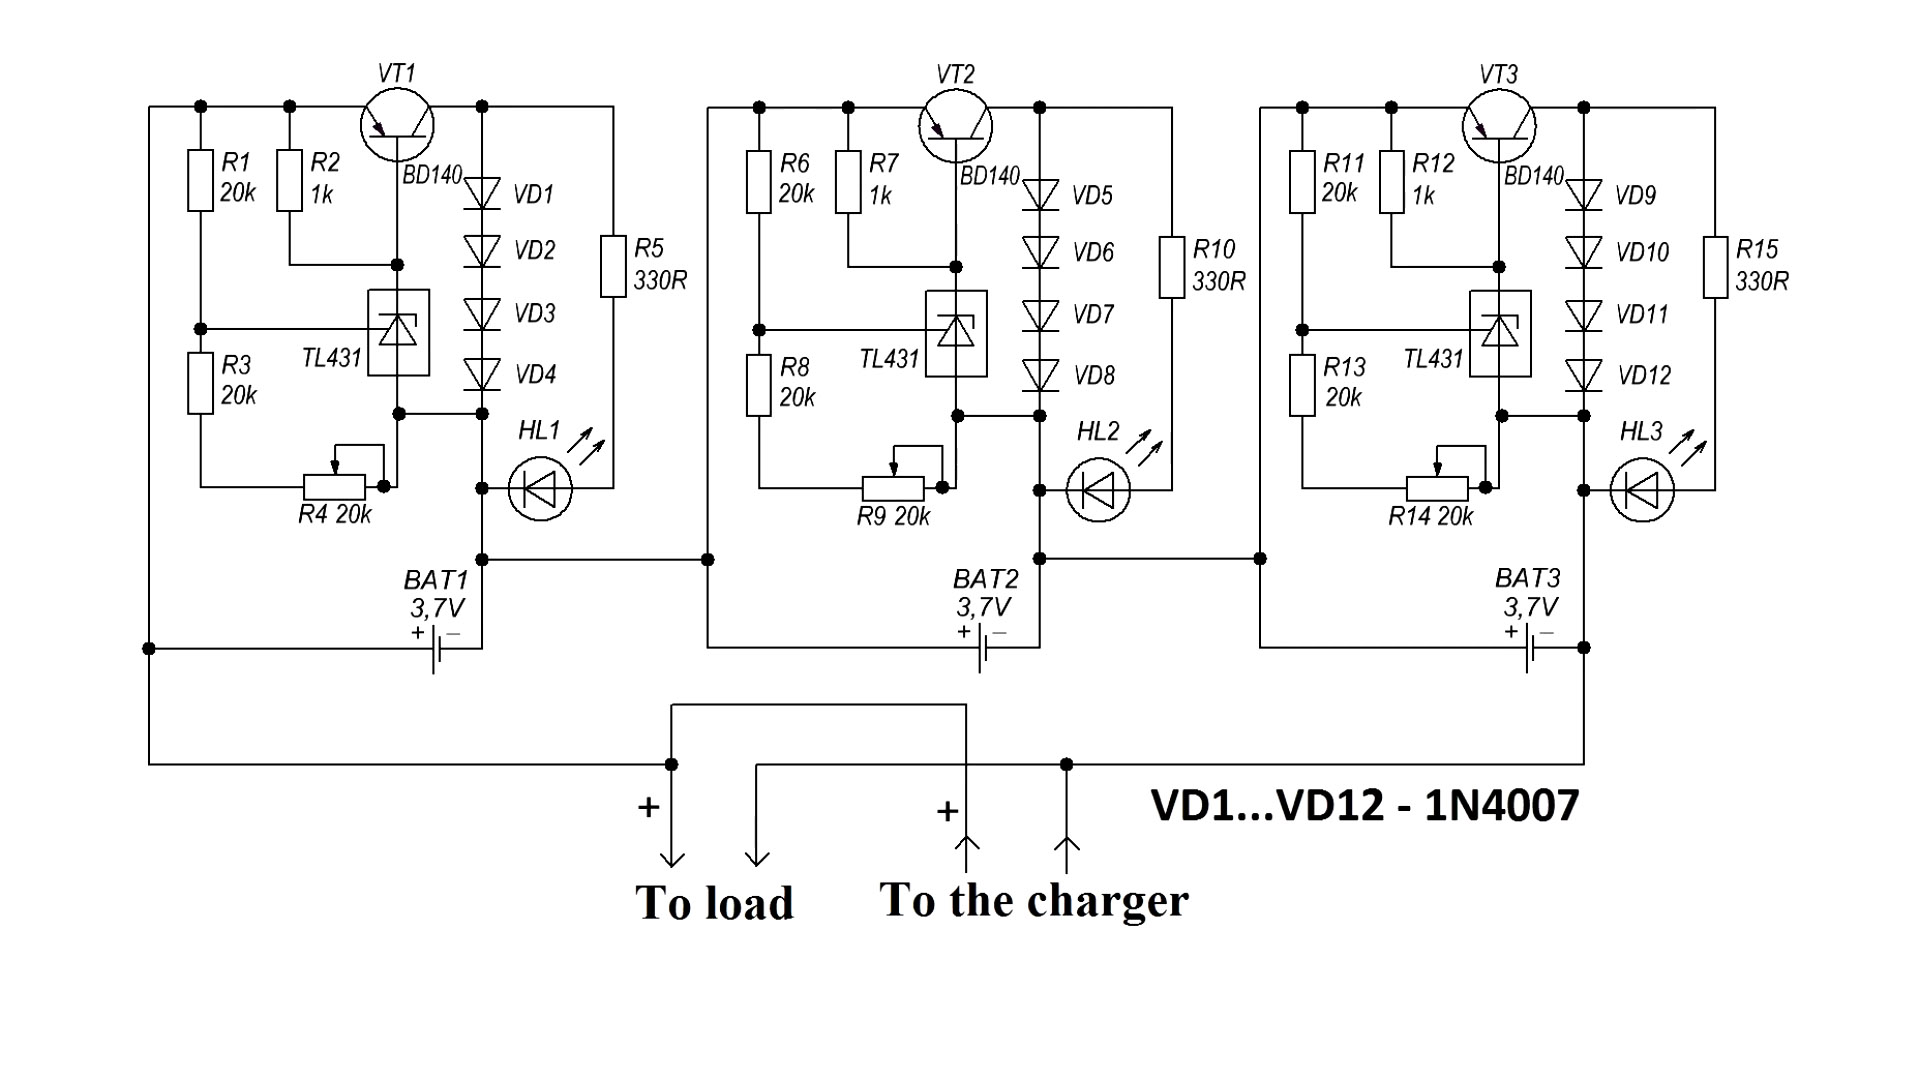 Как на транзисторах сделать блок балансировки на любое количество литий-ионных аккумуляторов